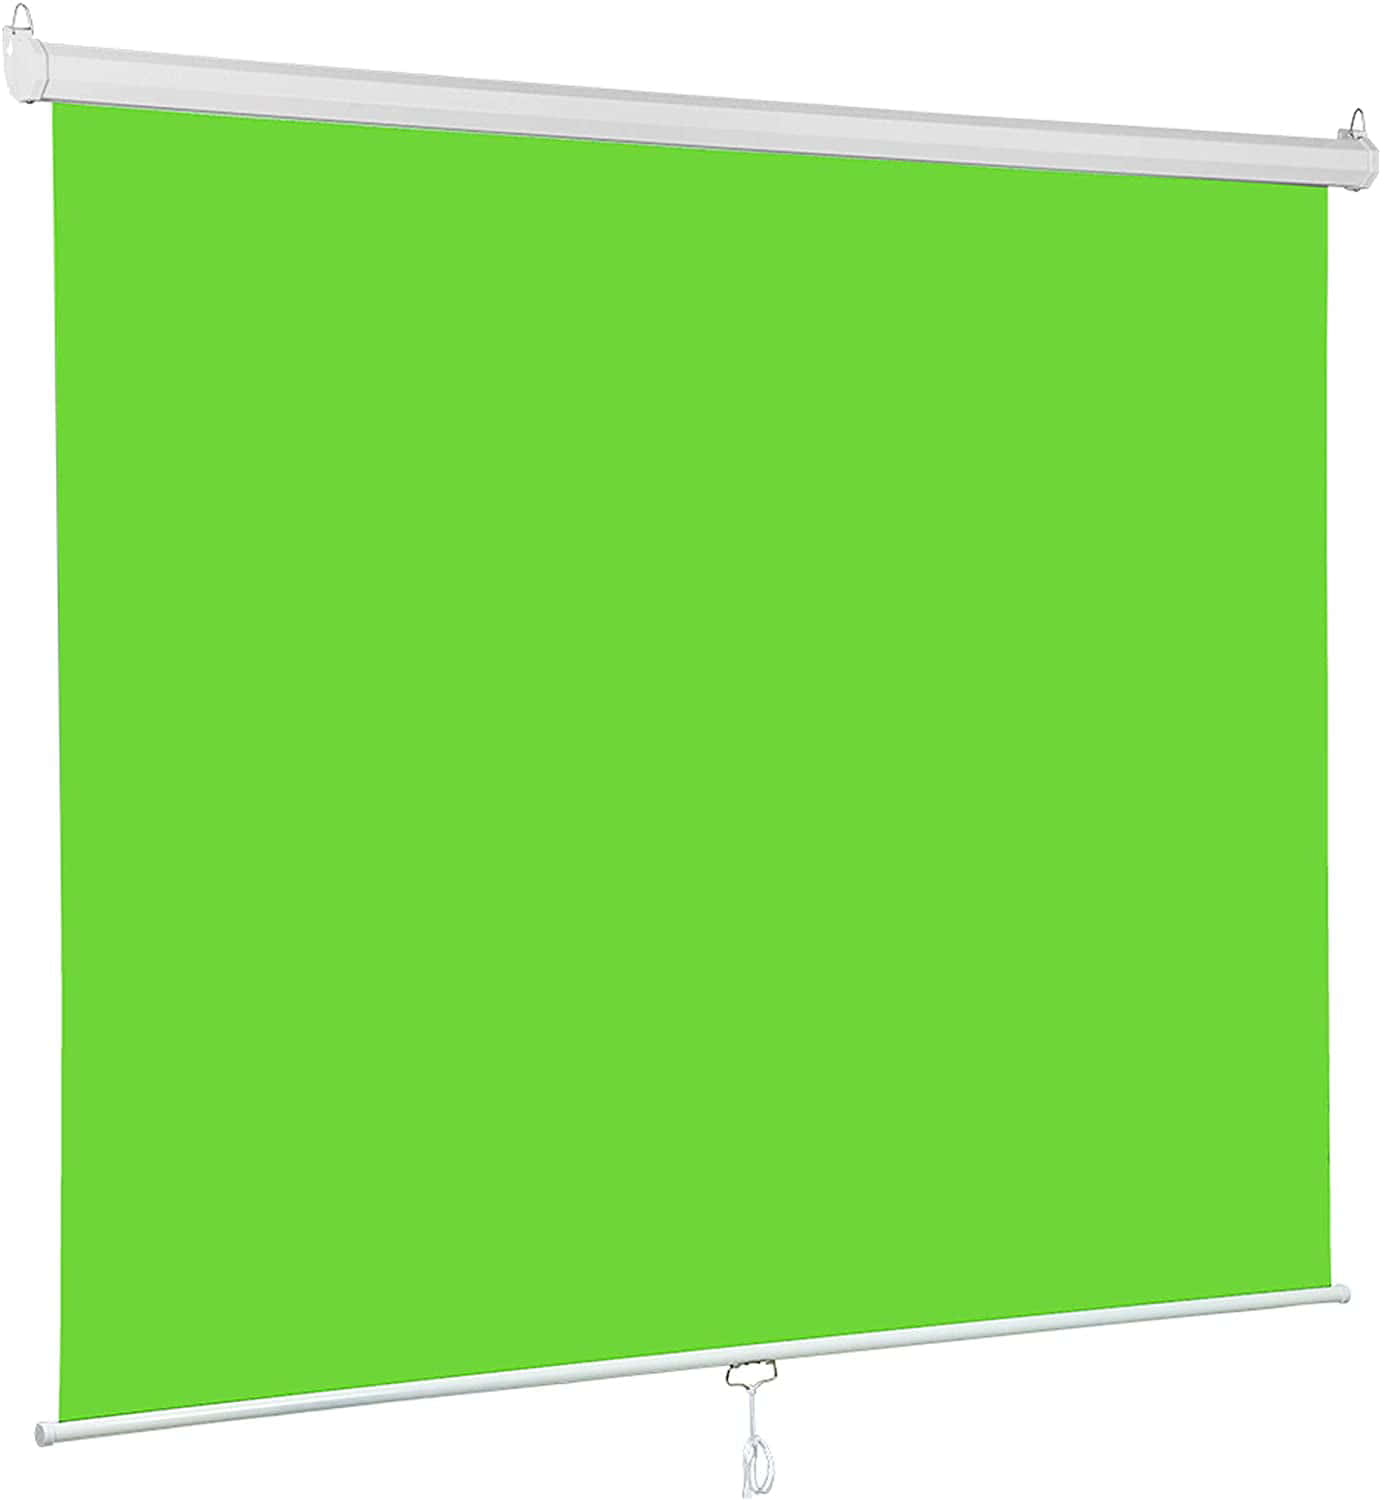 Grönaskärmbilder